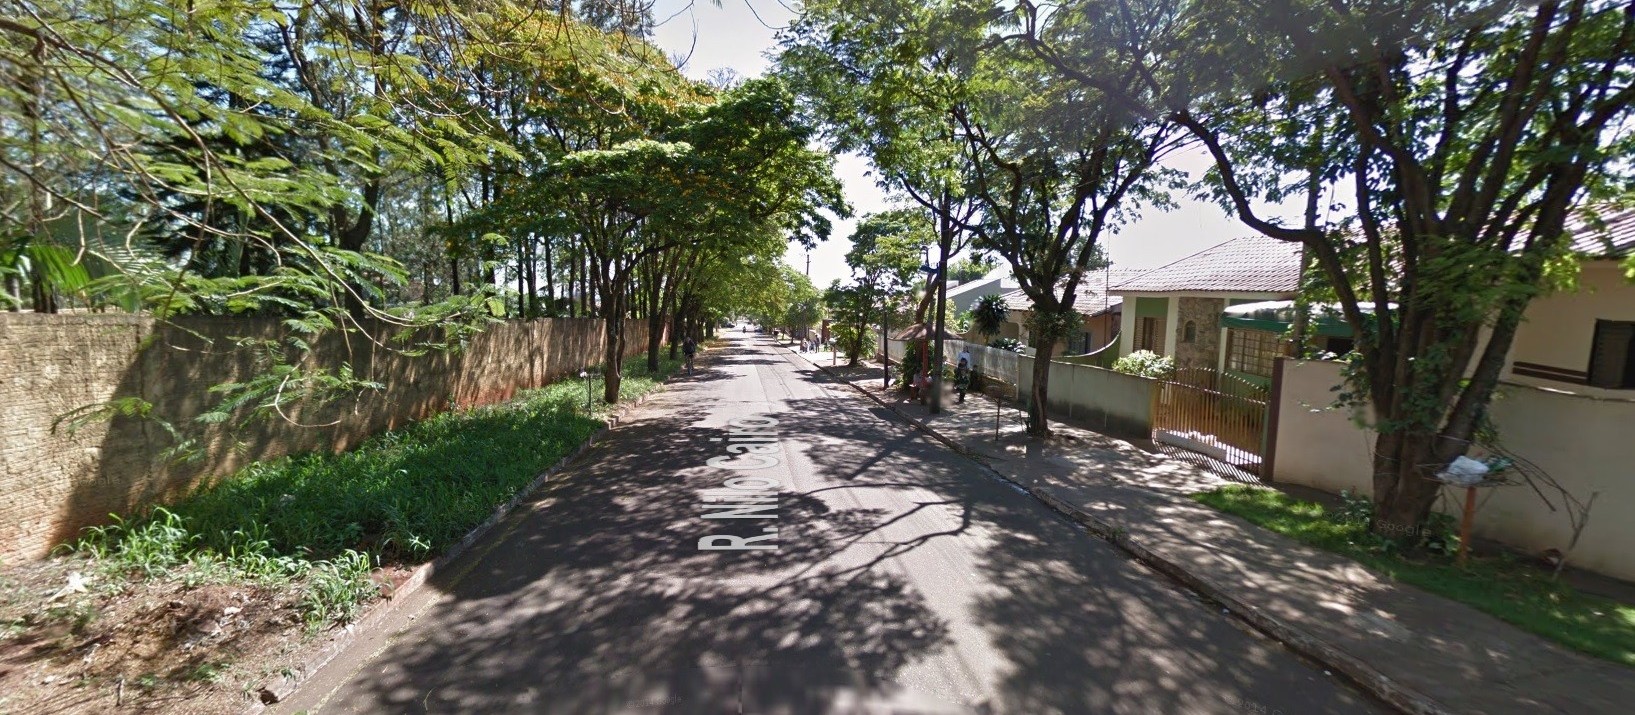 Prefeitura quer transformar ruas residenciais em comerciais em Maringá